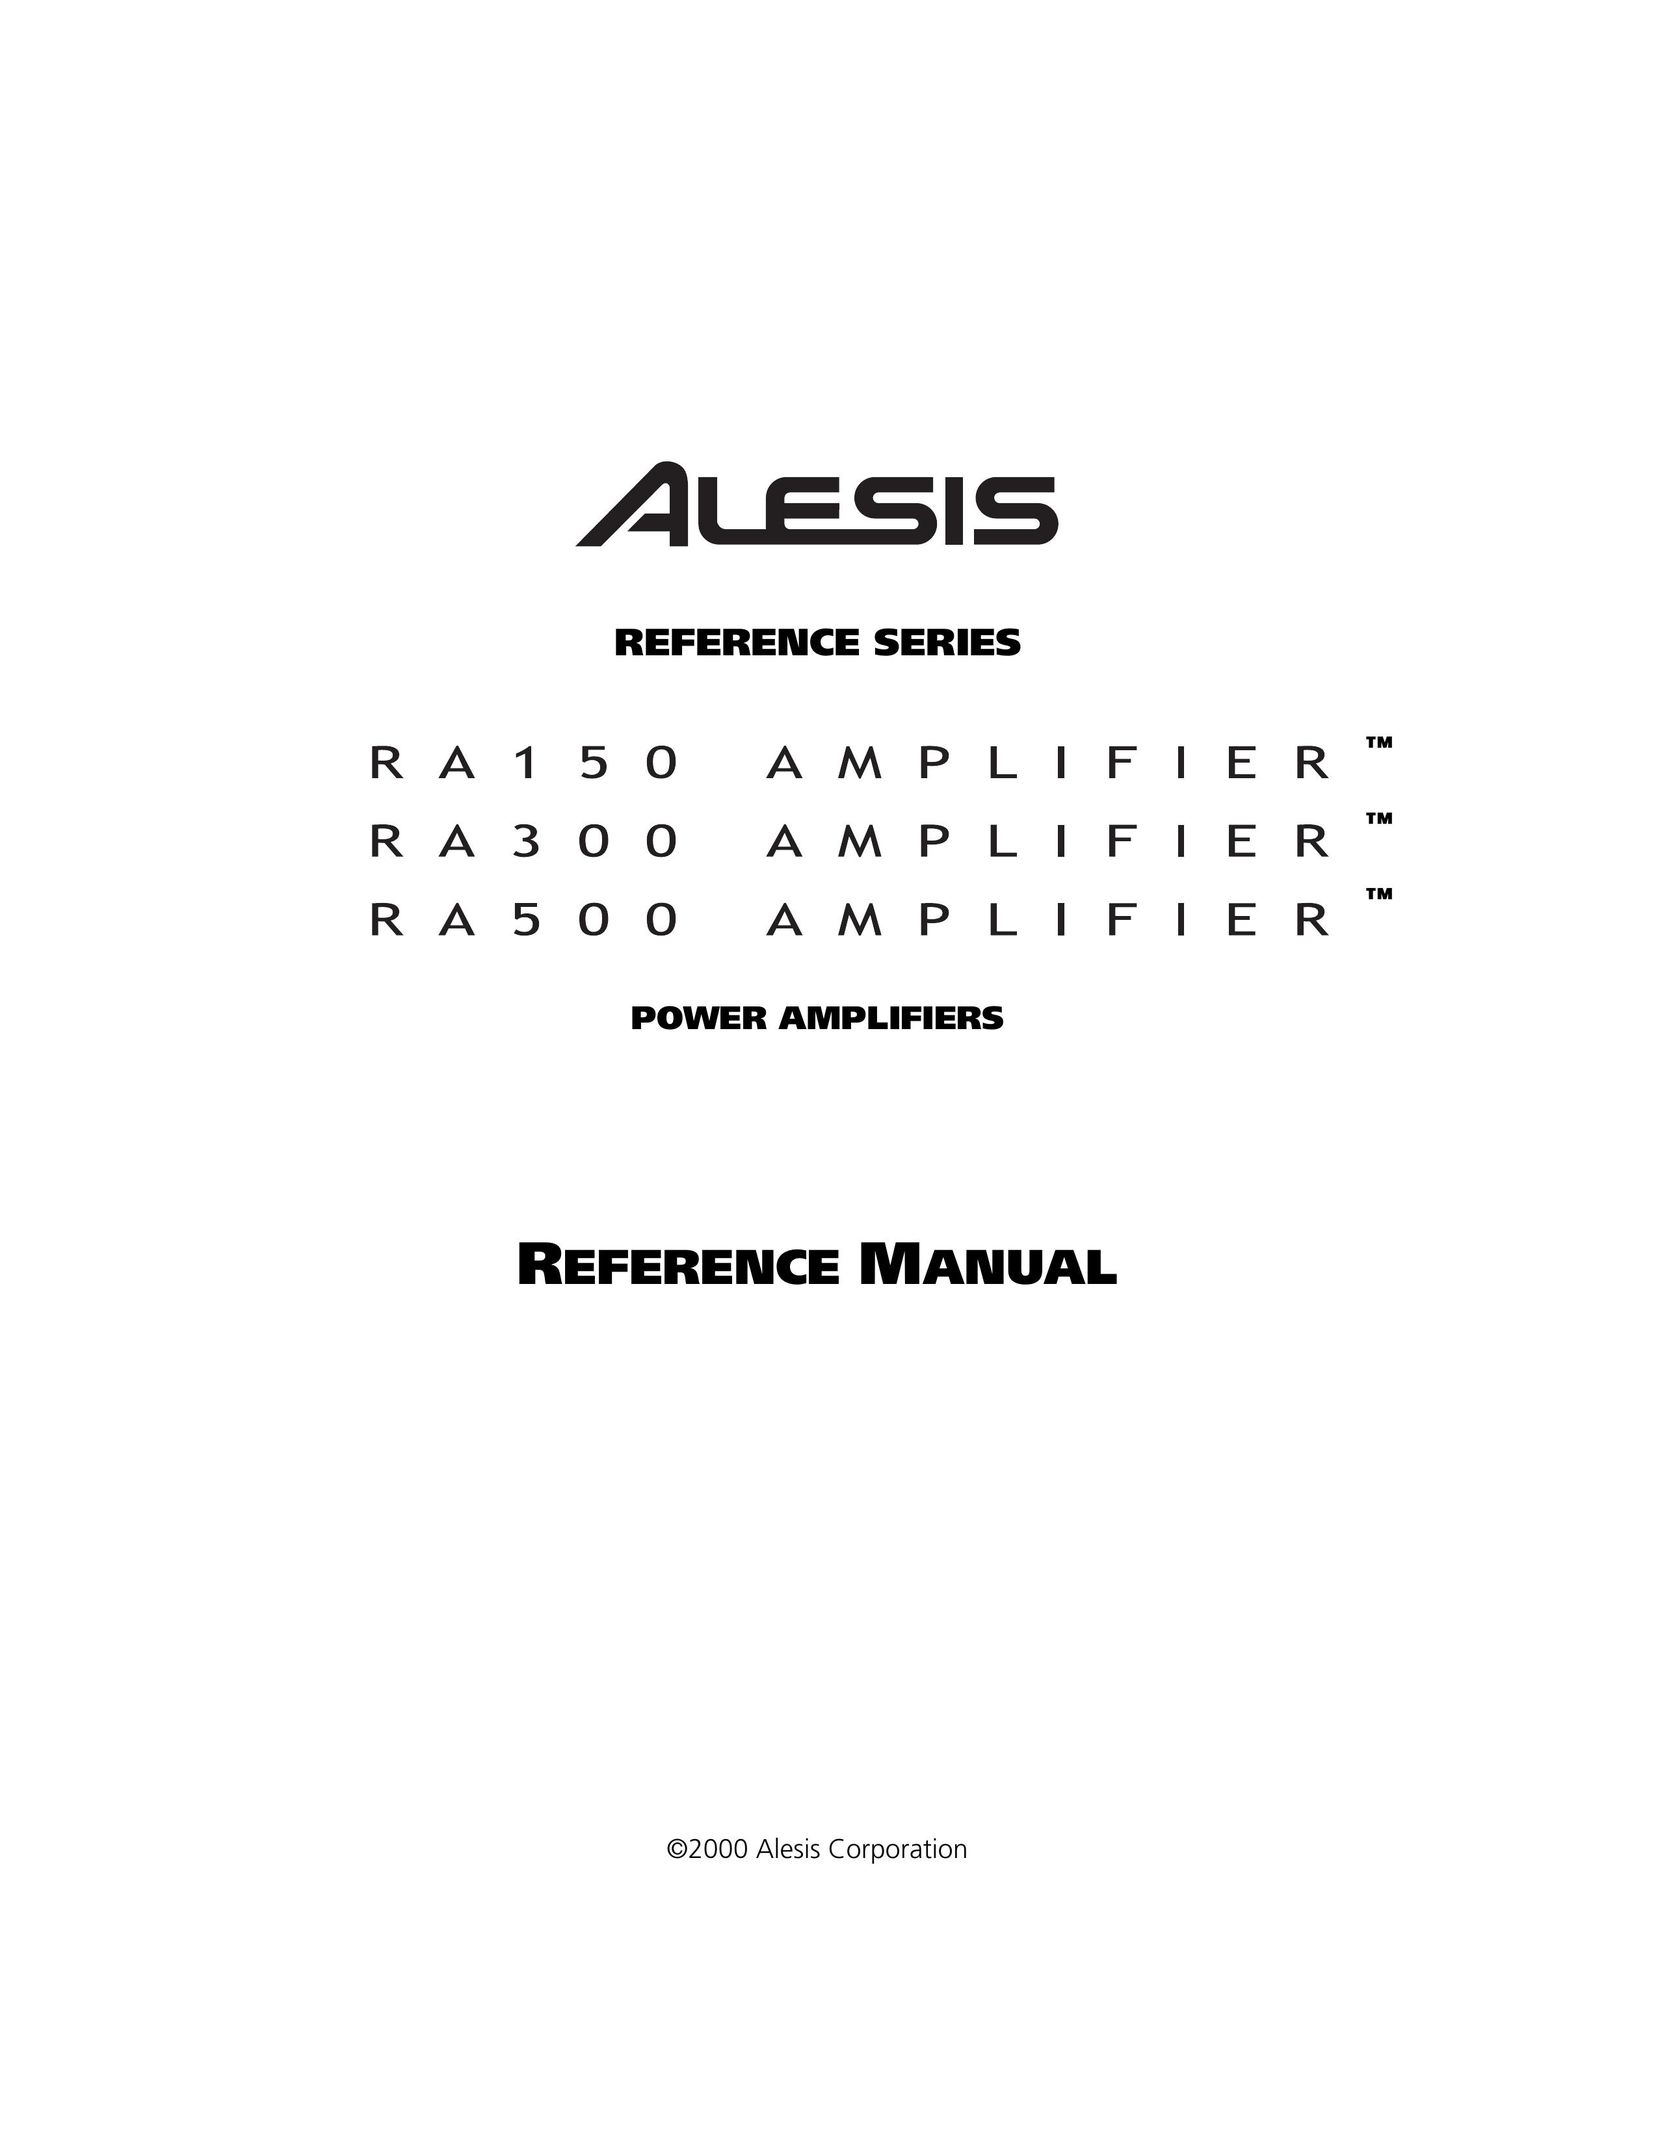 Alesis RA300 Car Amplifier User Manual